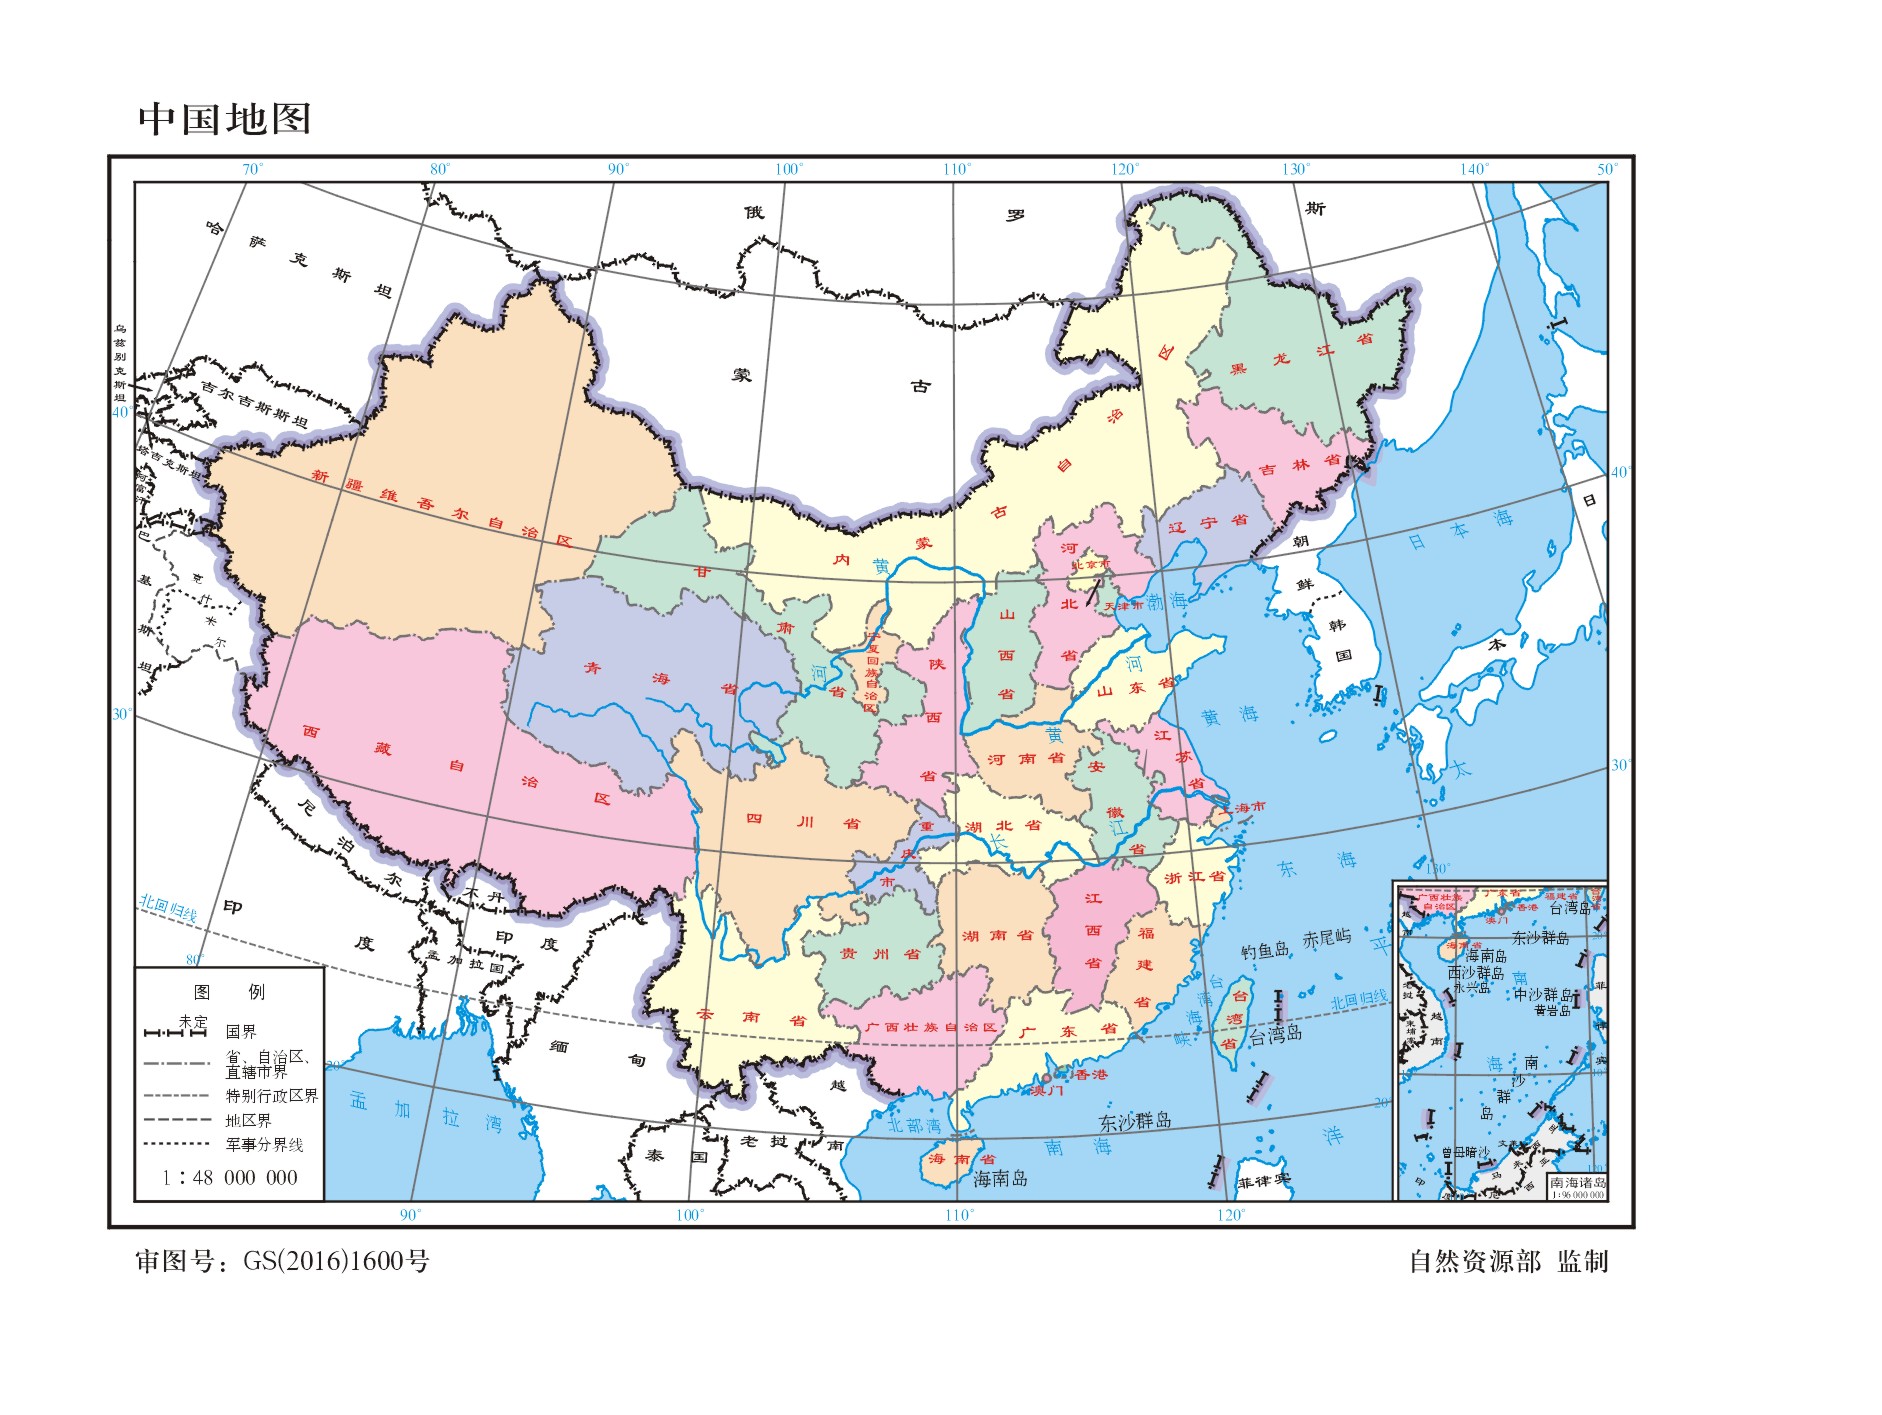 绘制兰伯特投影的中国版图